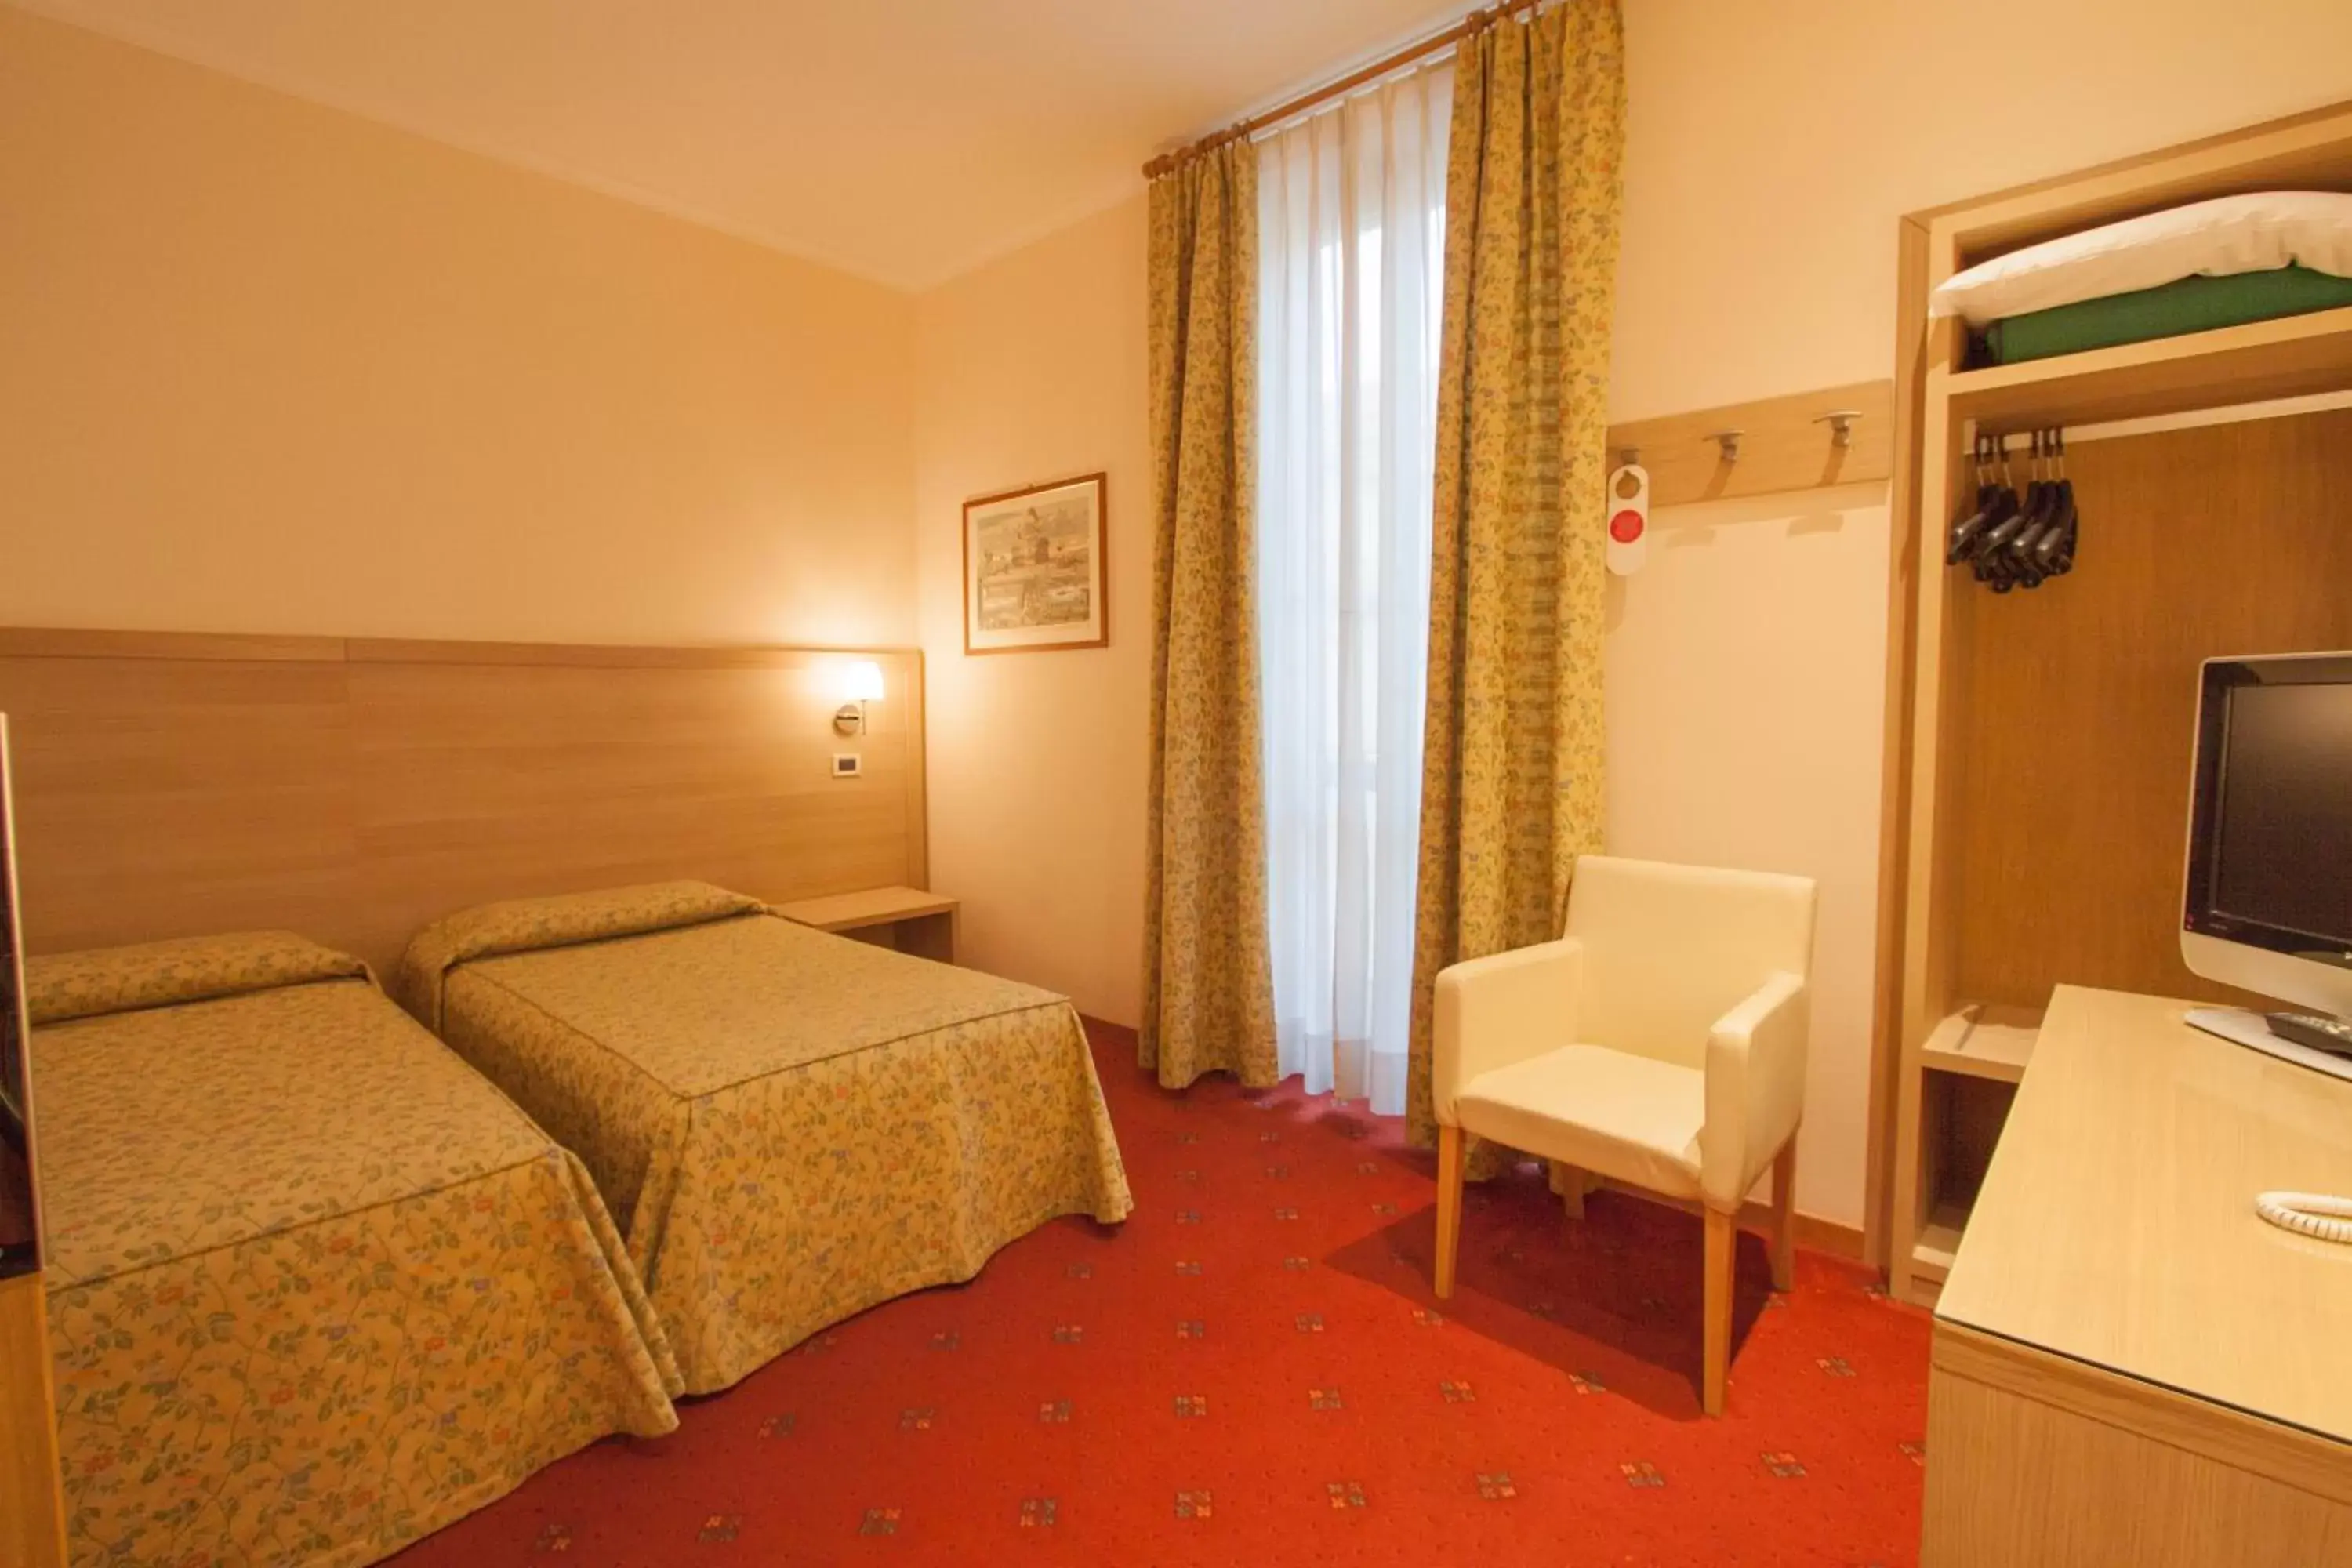 Twin Room in Hotel Laurentia